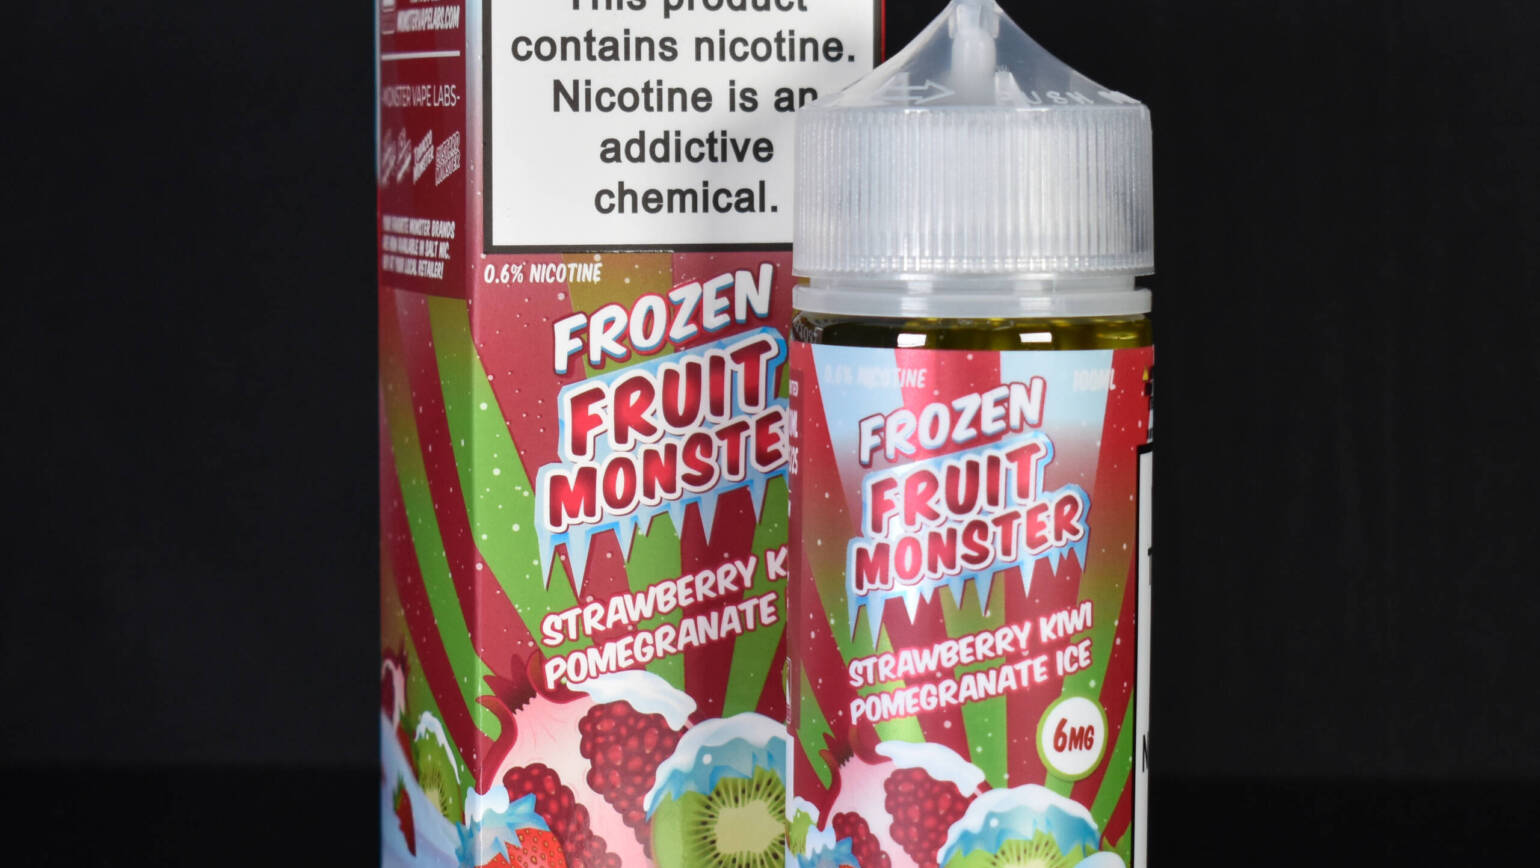 Fruit Monster–Strawberry Kiwi Pomegranate ICE